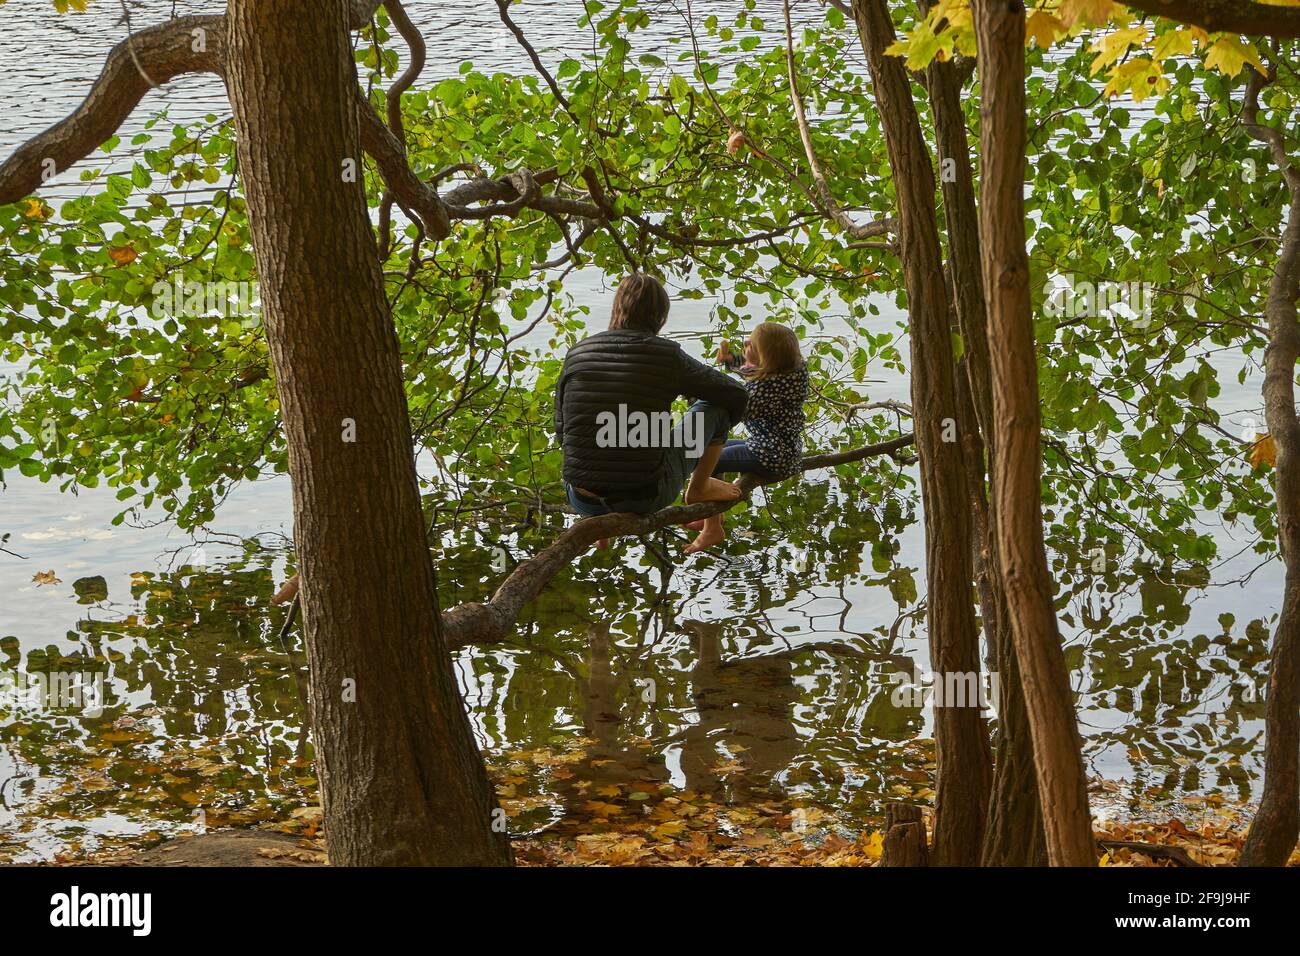 Vater mit Tochter am Schlachtensee, Bäume mit Herbstlaub, Steglitz-Zehlendorf, Berlin, Deutschland Foto Stock